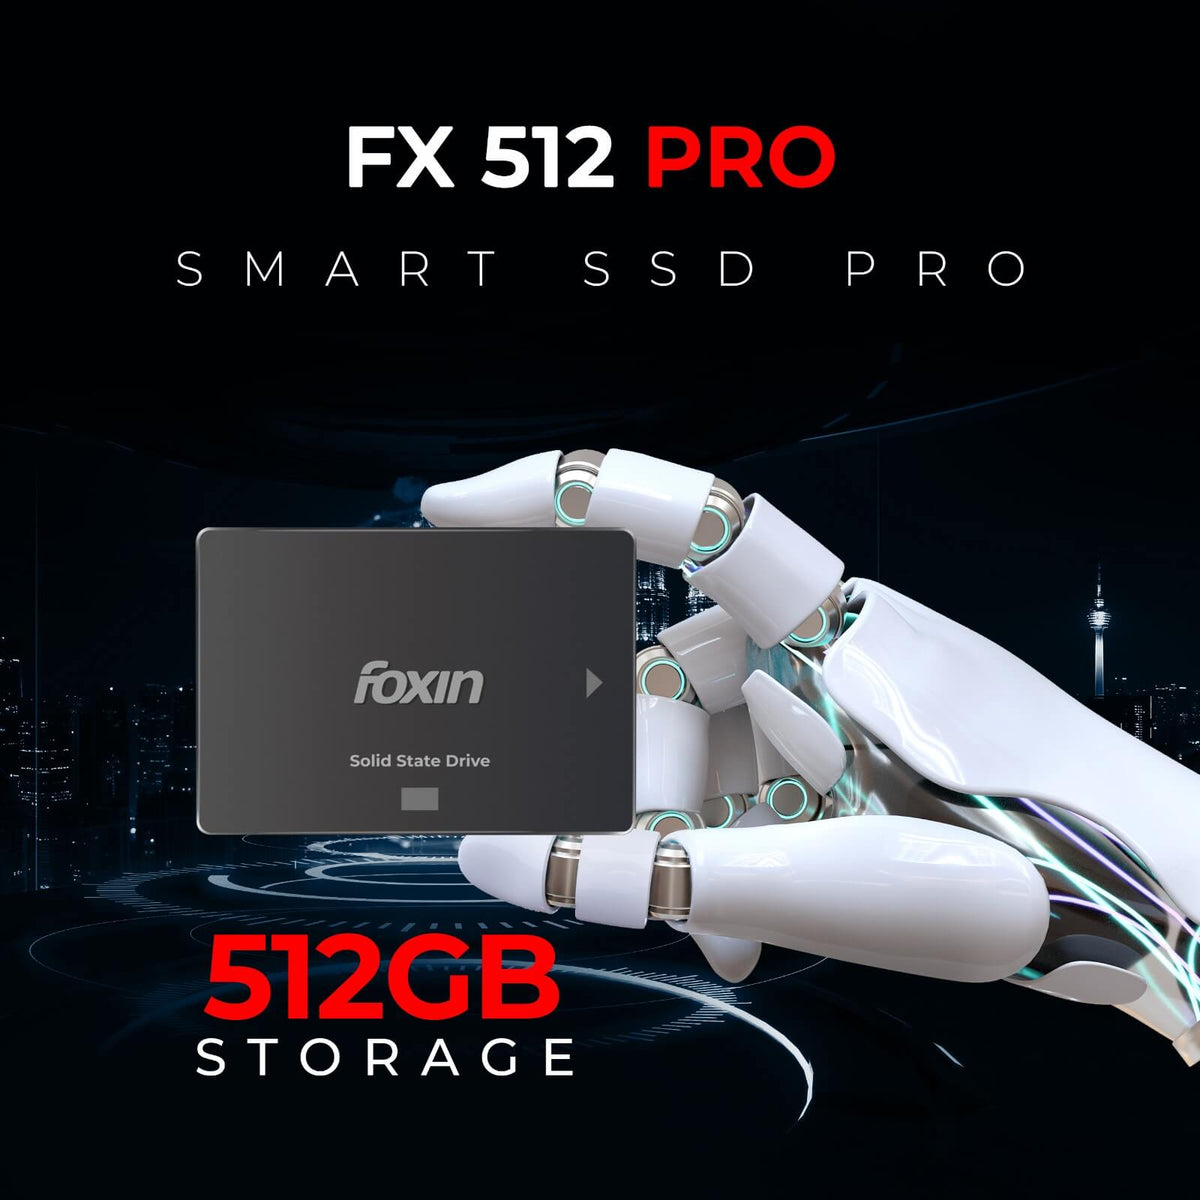 Foxin® FX 512 PRO SSD